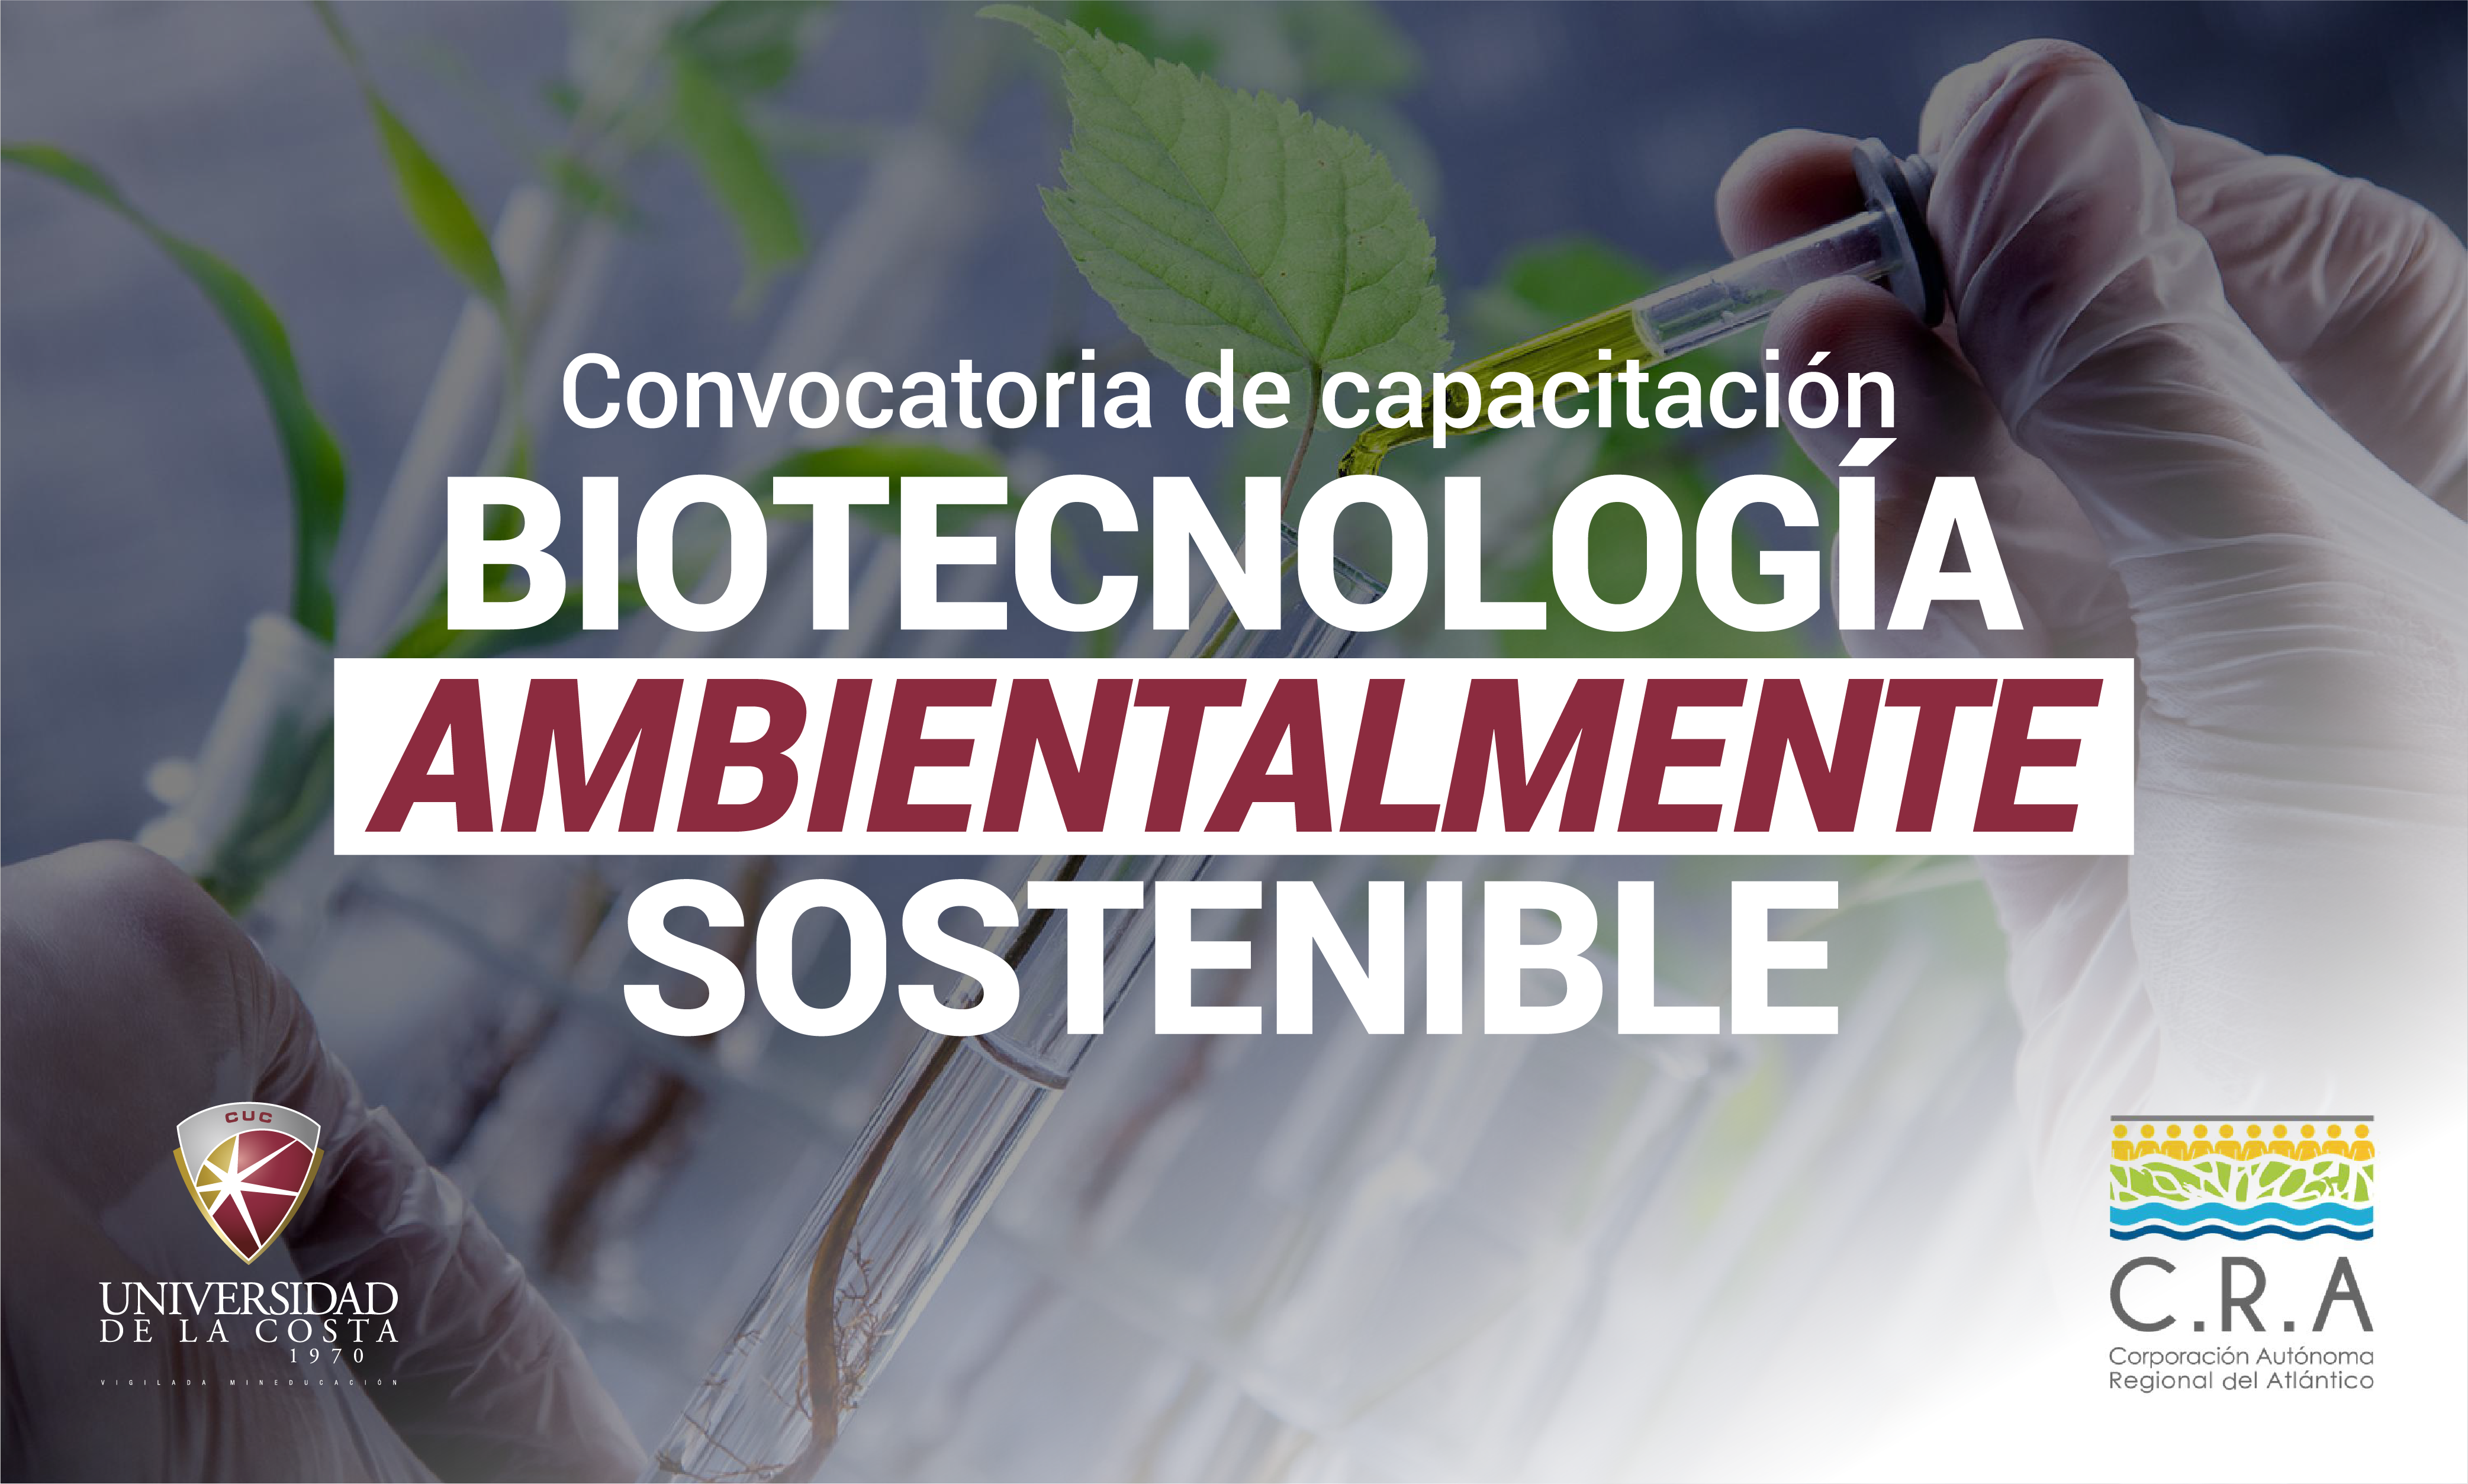 Convocatoria para formación en biotecnología ambientalmente sostenible